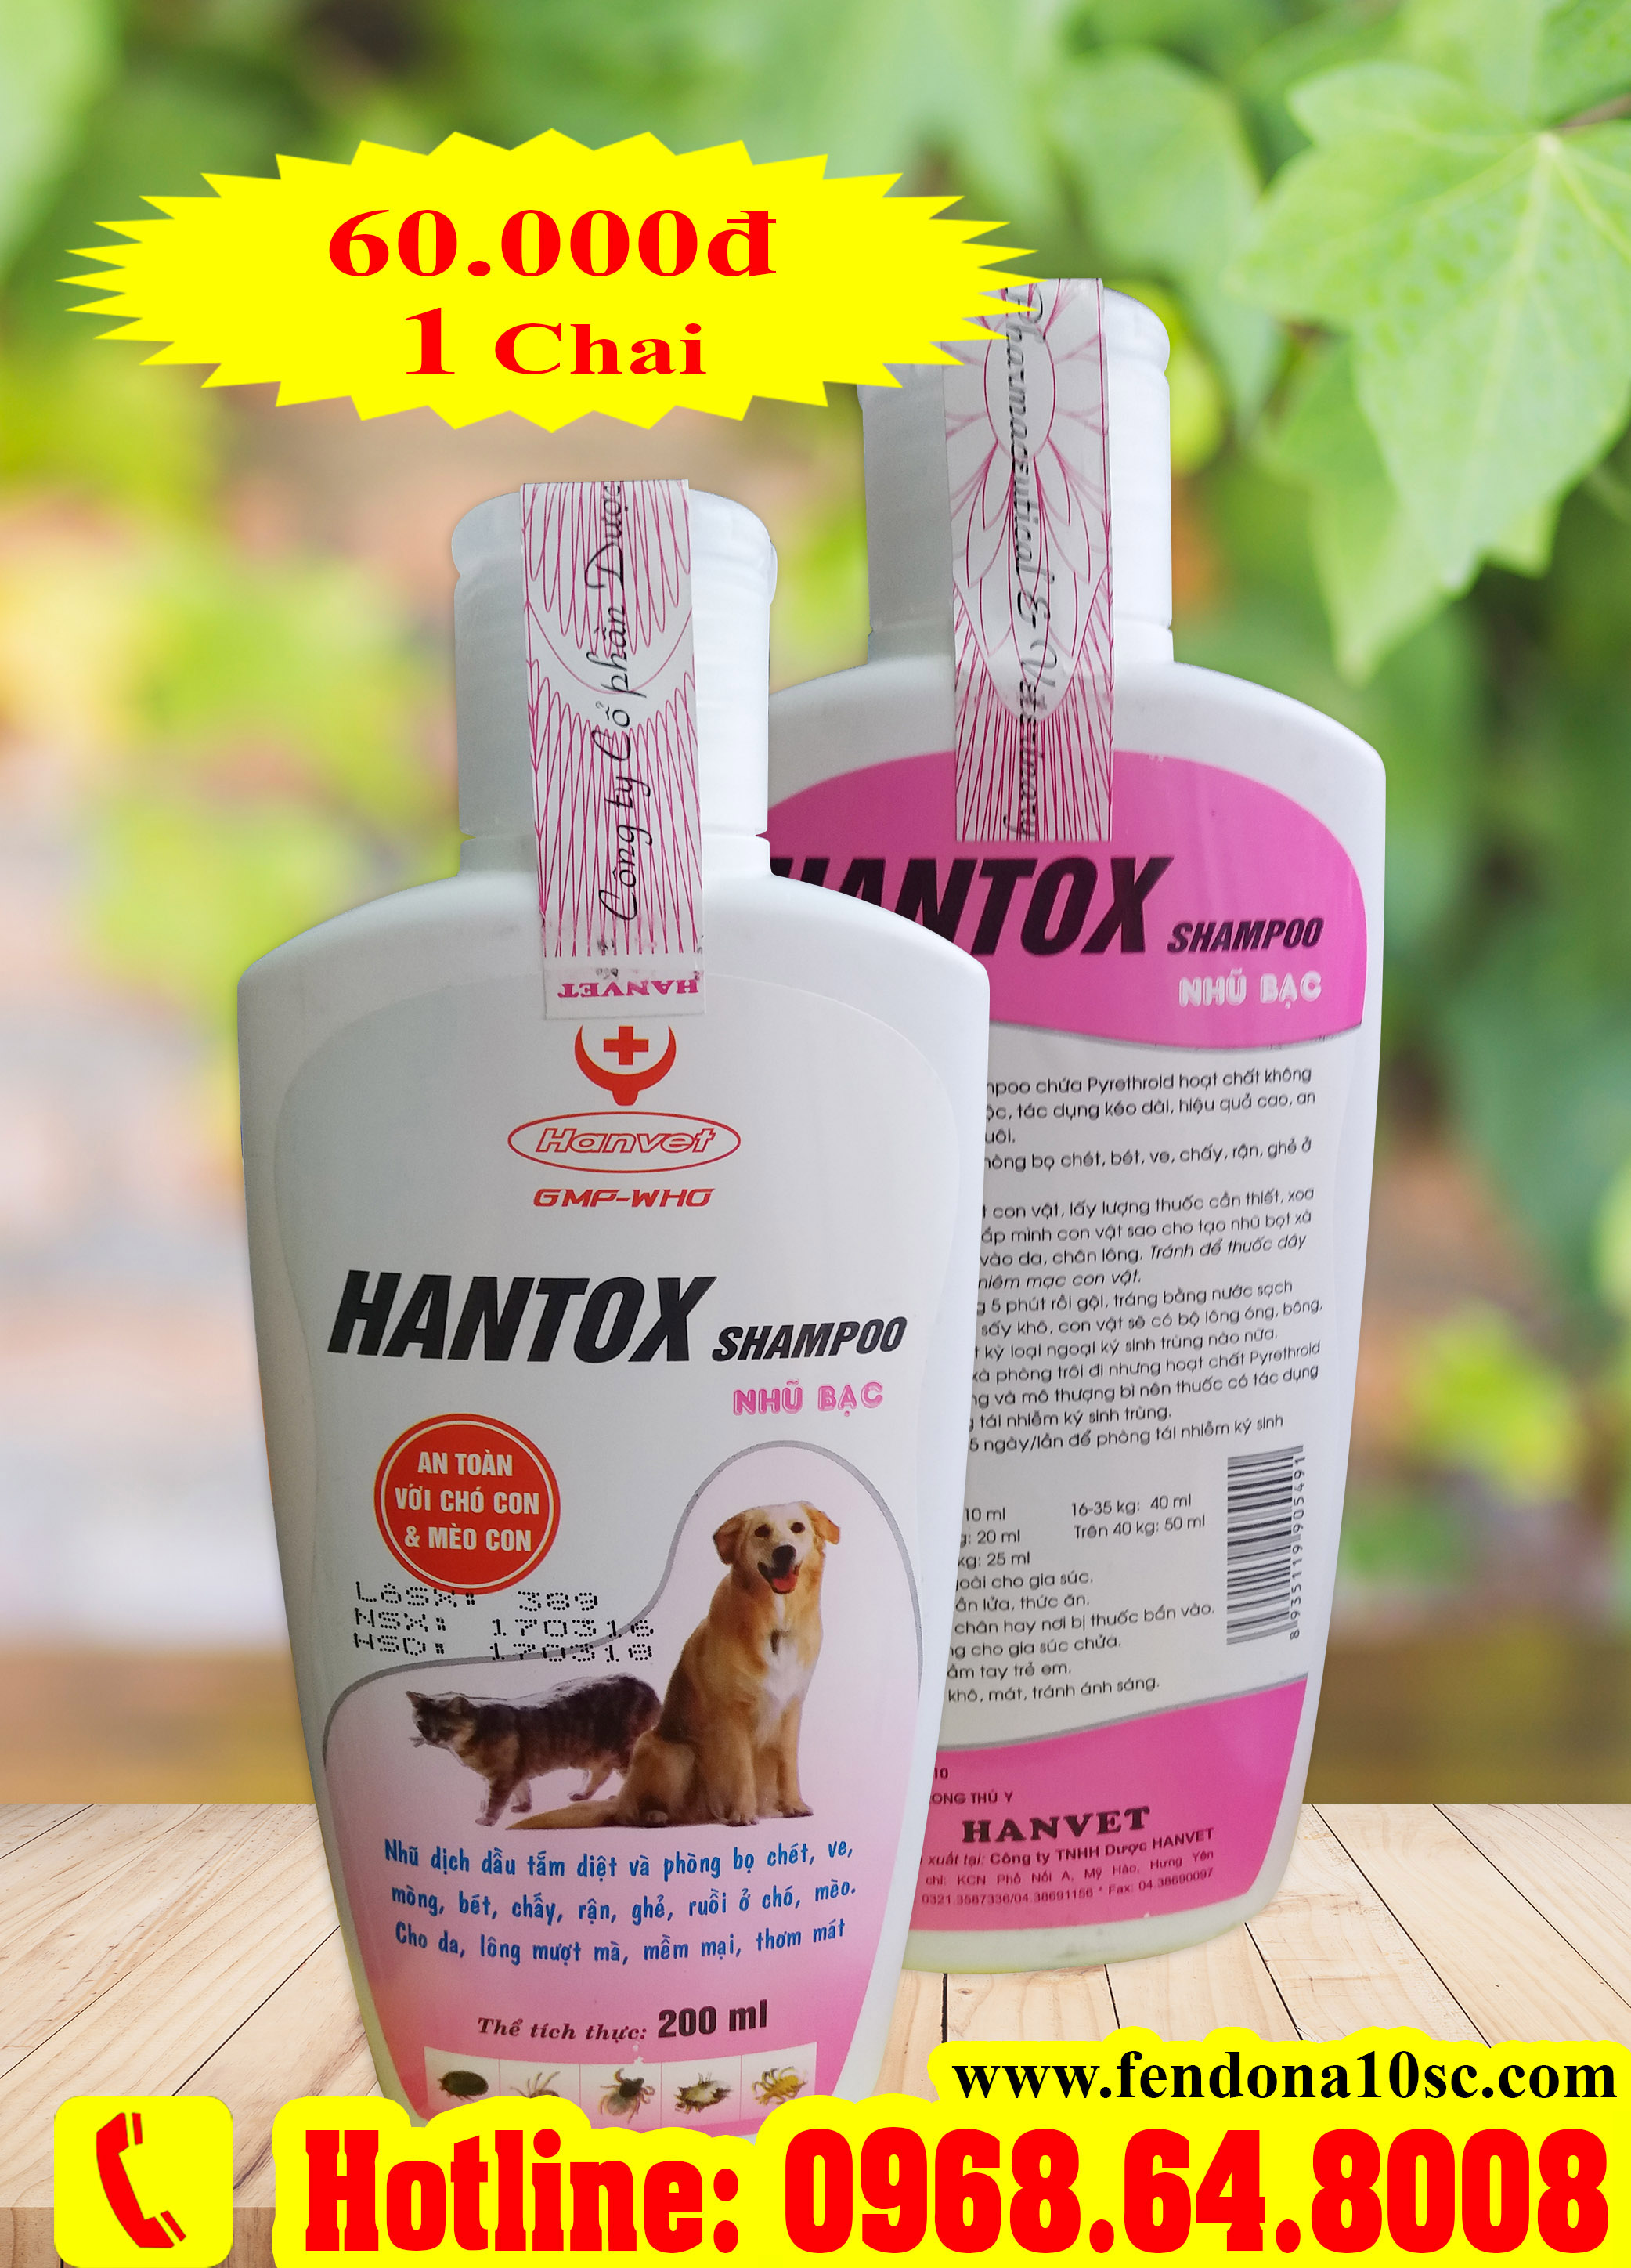 Hantox Shampoo (200ml) - Chai Hồng ( SX tại VIỆT NAM) - Sữa tắm diệt côn trùng, ve rận, bọ chét cho chó mèo...